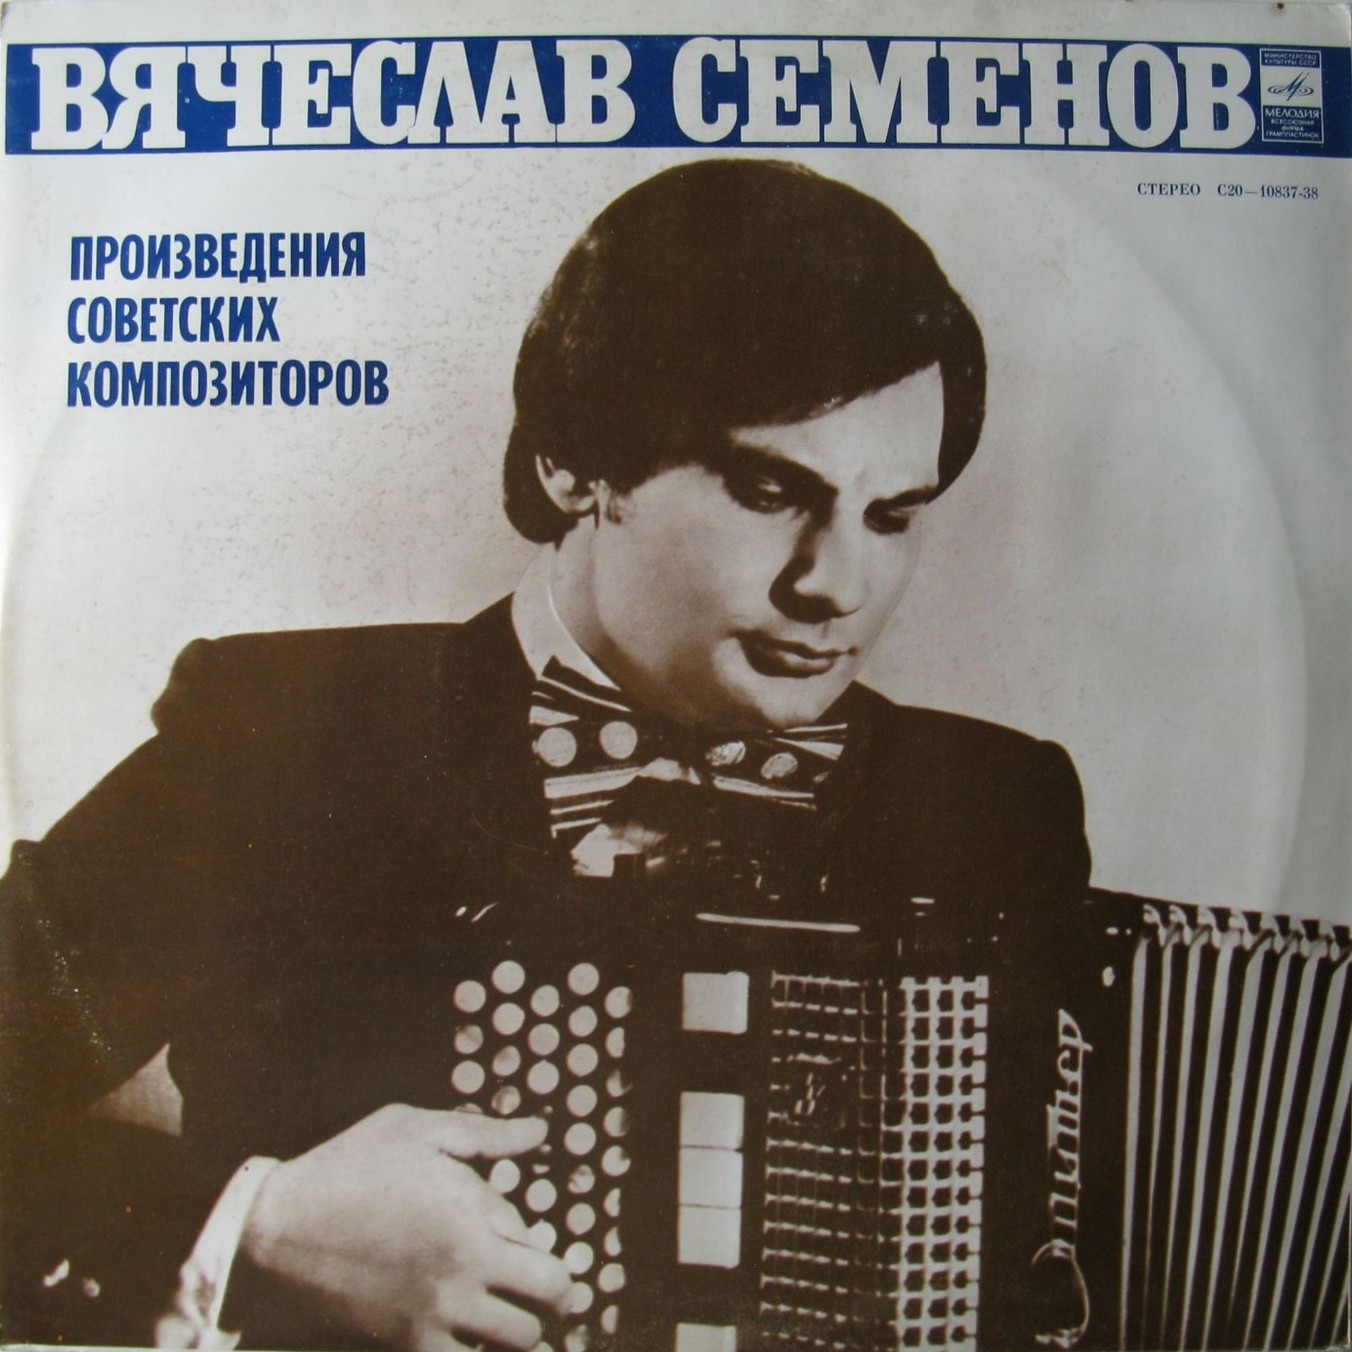 Вячеслав СЕМЕНОВ (баян)